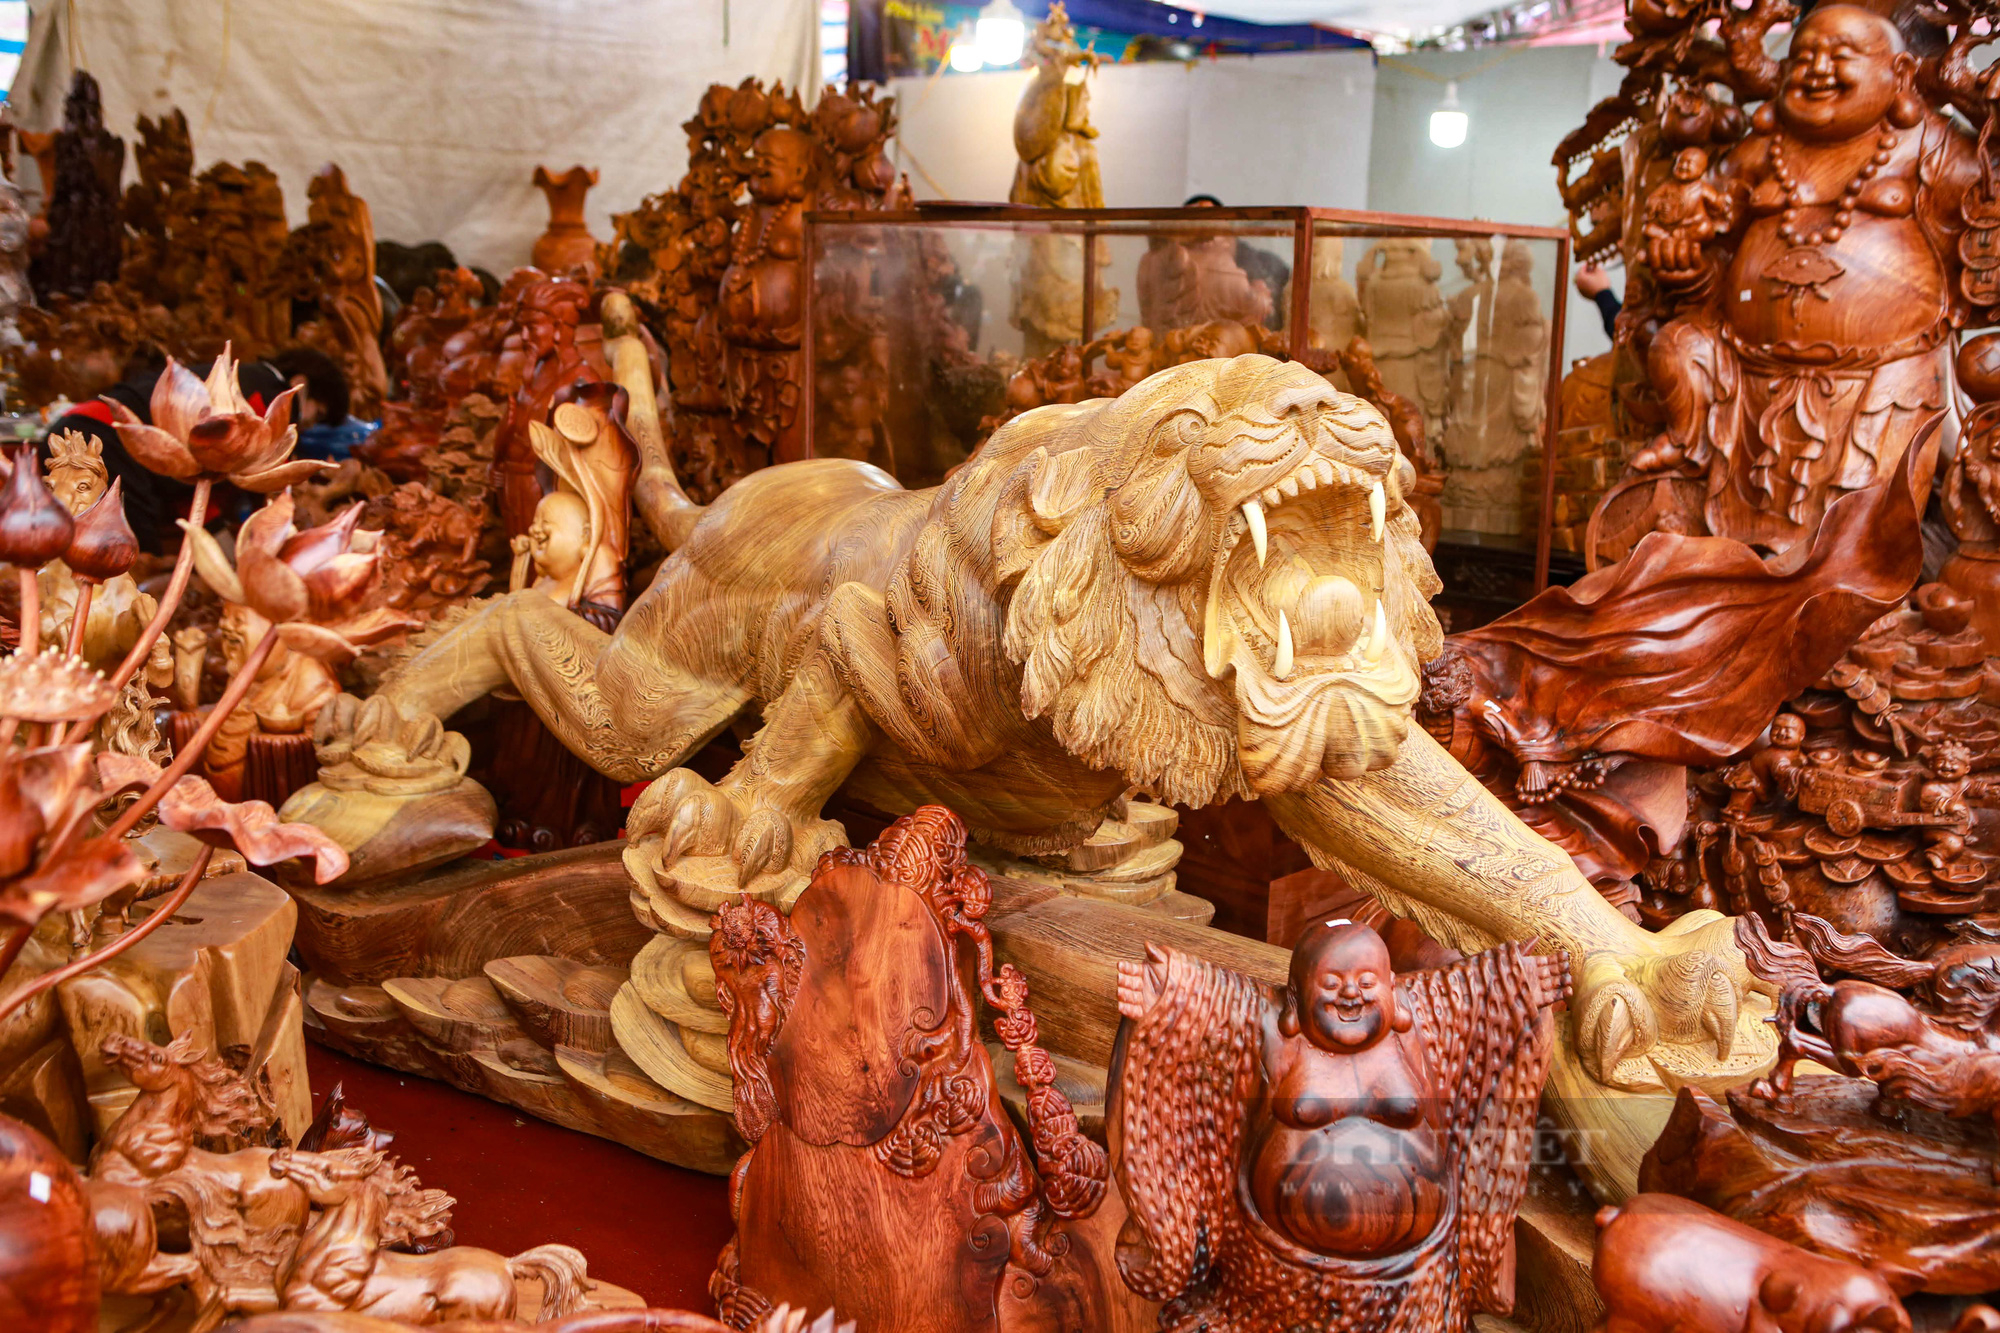 Hổ được làm bằng gỗ mun có giá hơn 100 triệu đồng tại chợ hoa xuân 2022 - Ảnh 3.